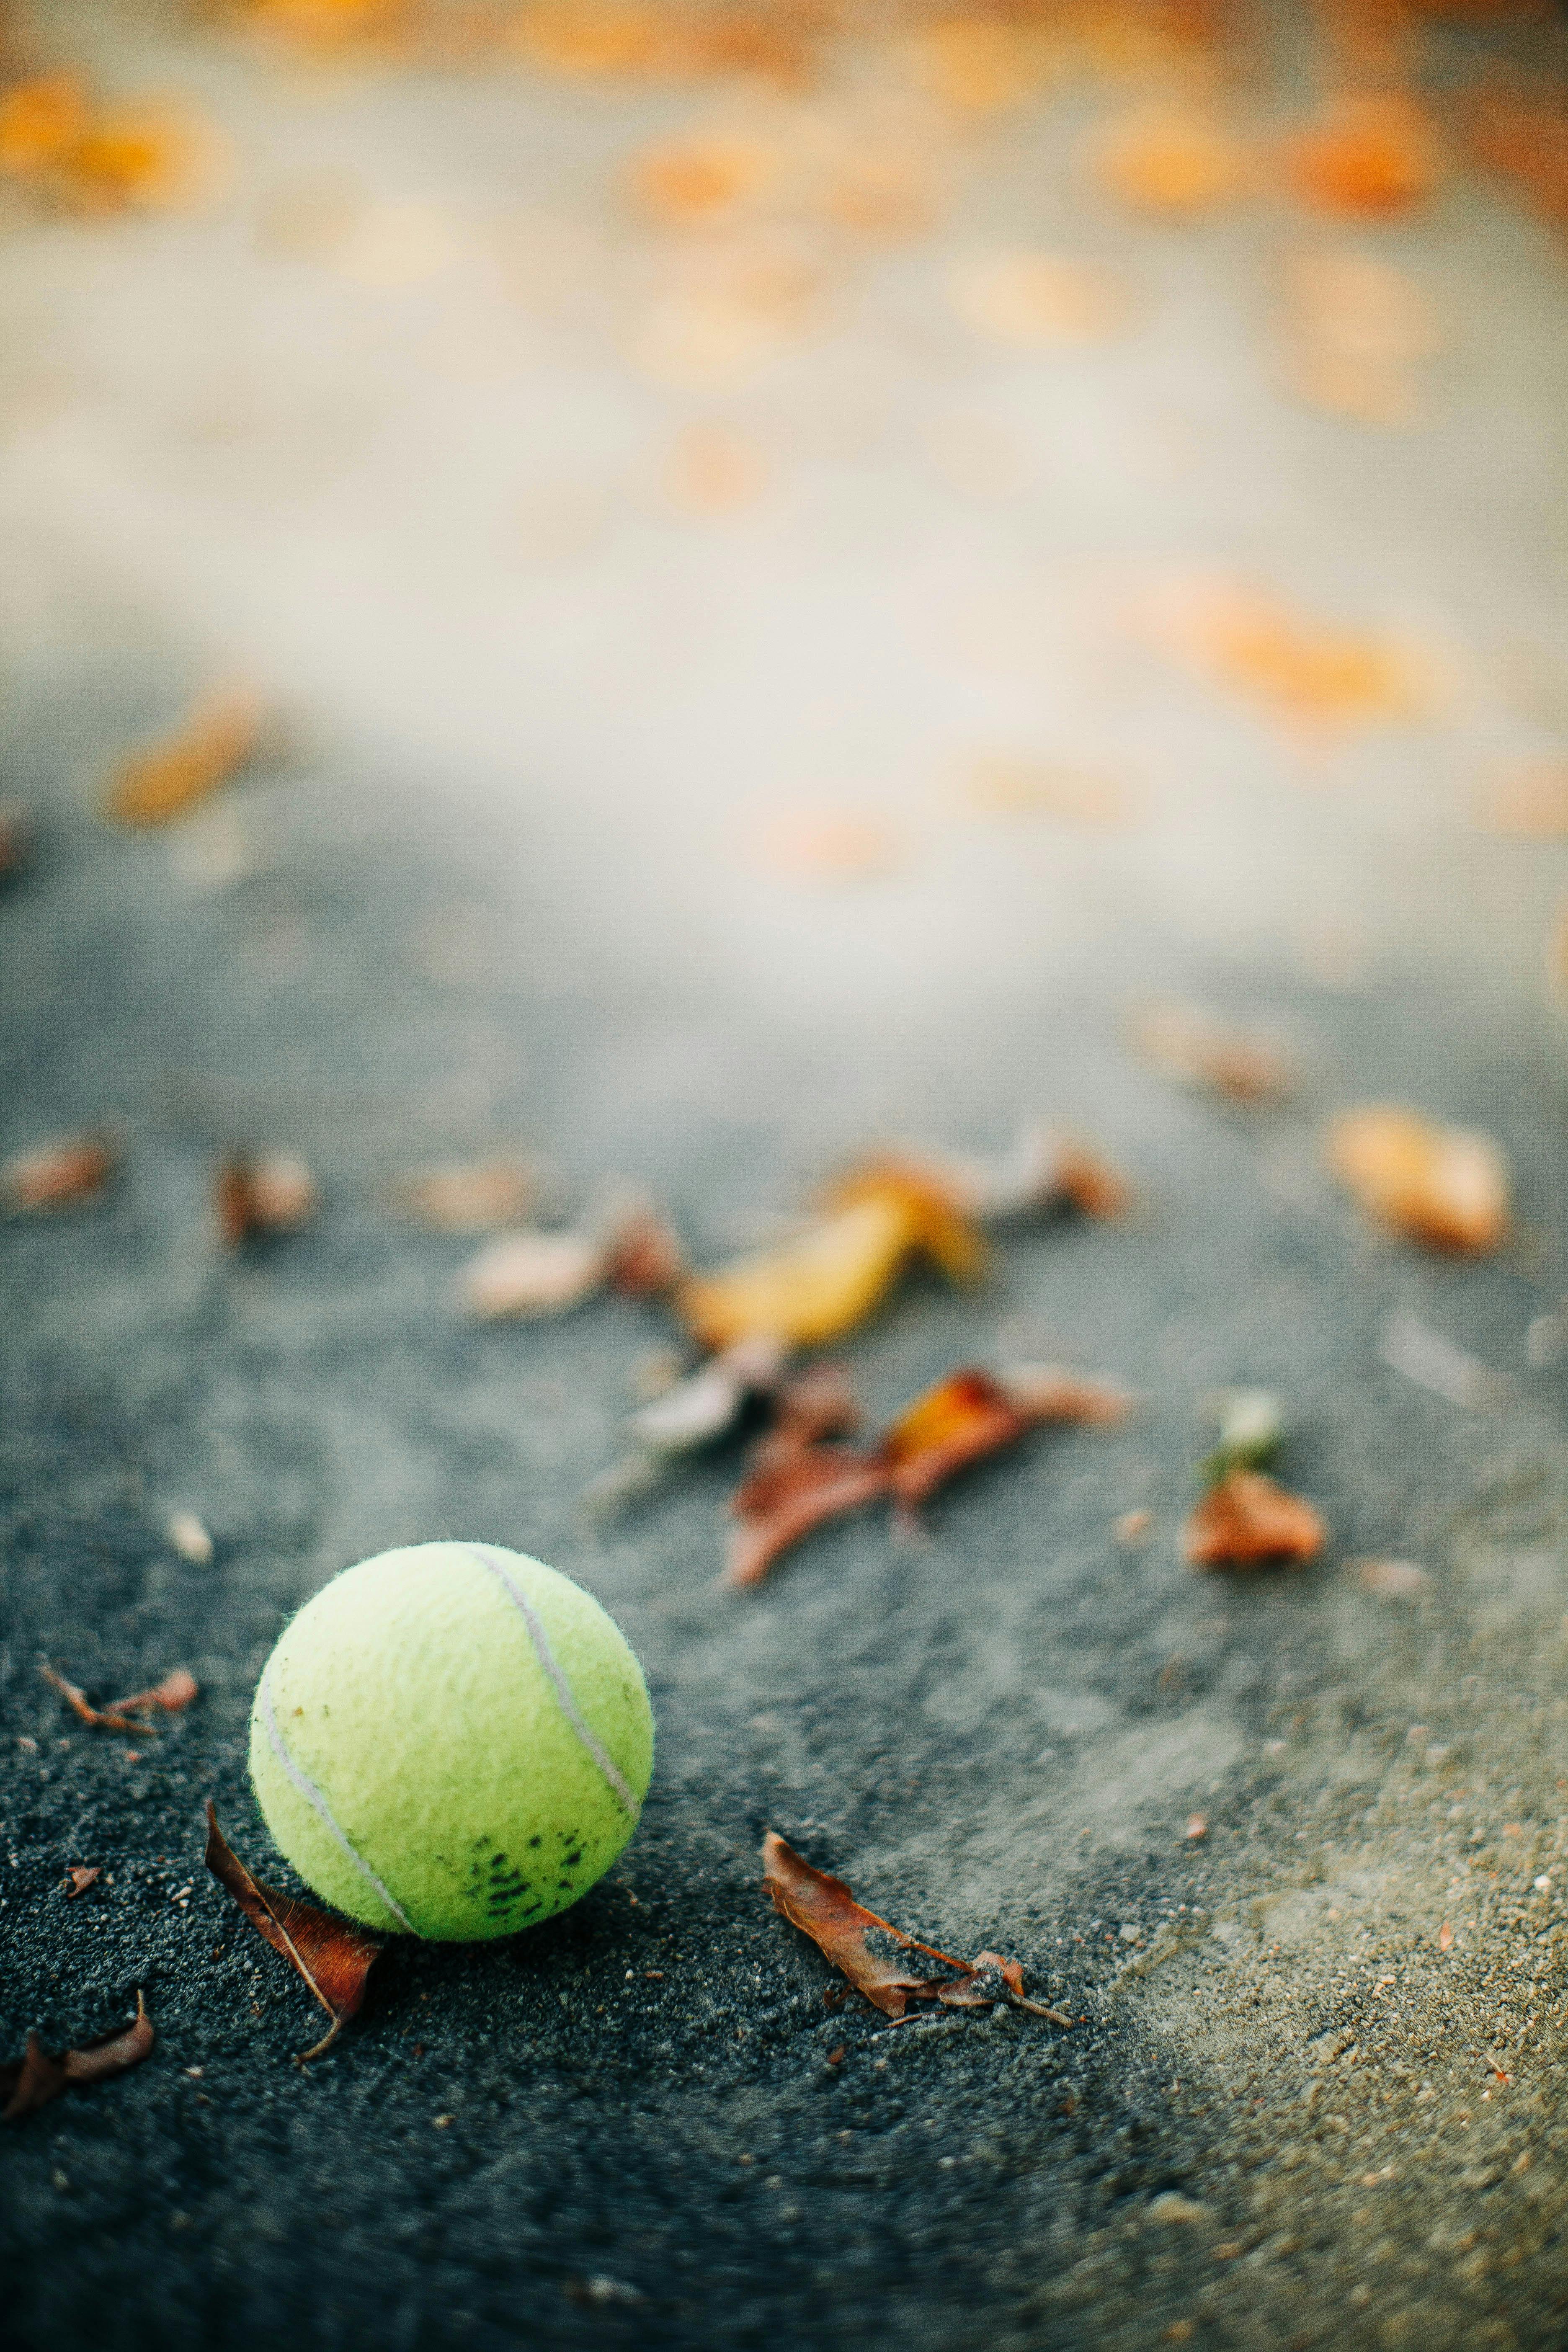 Hình Nền Cảnh Thể Thao Tennis Tải Về Miễn Phí Hình ảnh tennis thể thao  sân tennis Sáng Tạo Từ Lovepik